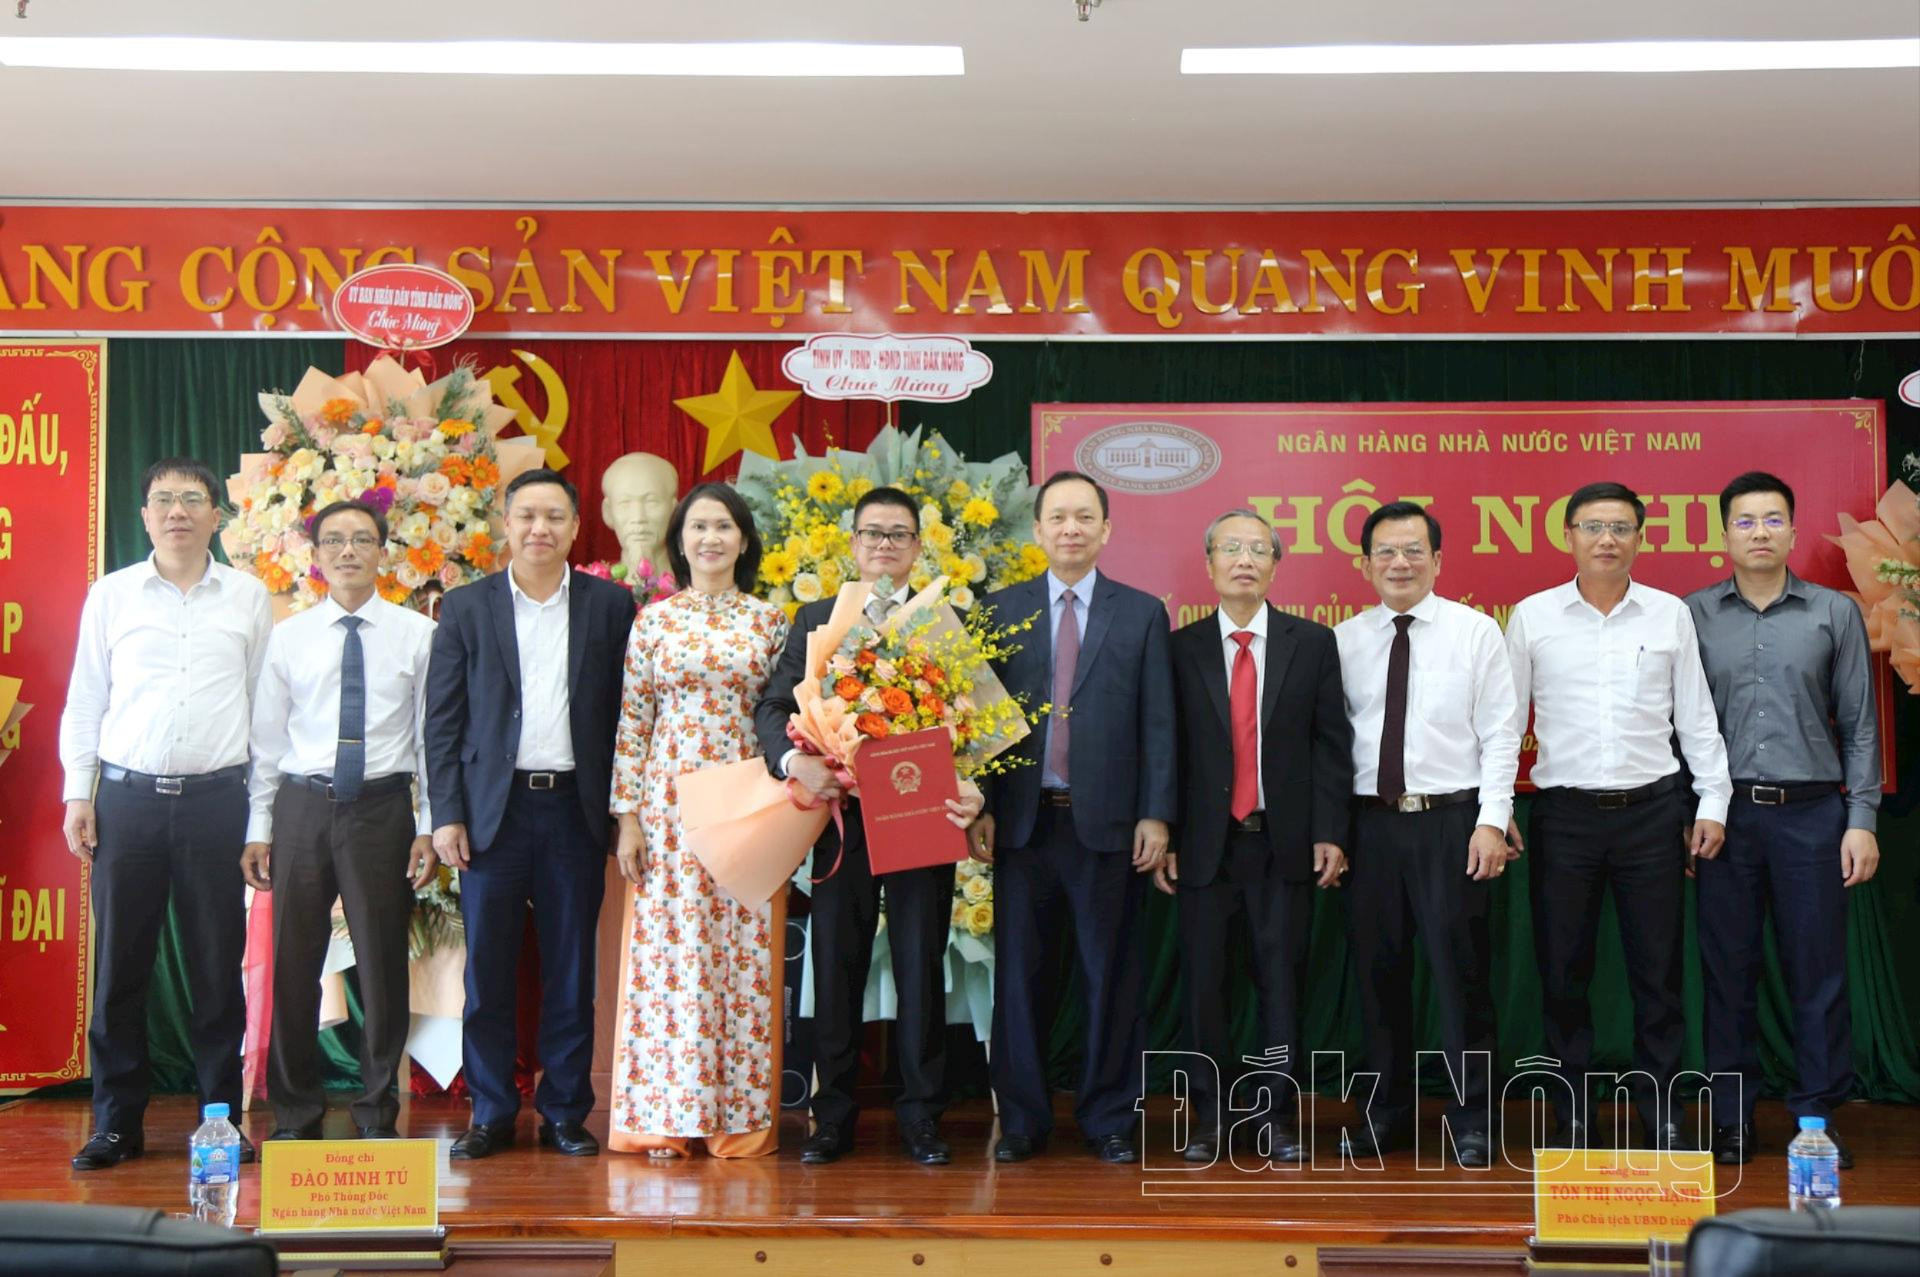 Đại diện Ngân hàng Nhà nước Việt Nam, UBND tỉnh Đắk Nông, nhiều đơn vị chụp hình lưu niệm với tân Giám đốc Chi nhánh Ngân hàng Nhà nước Đắk Nông